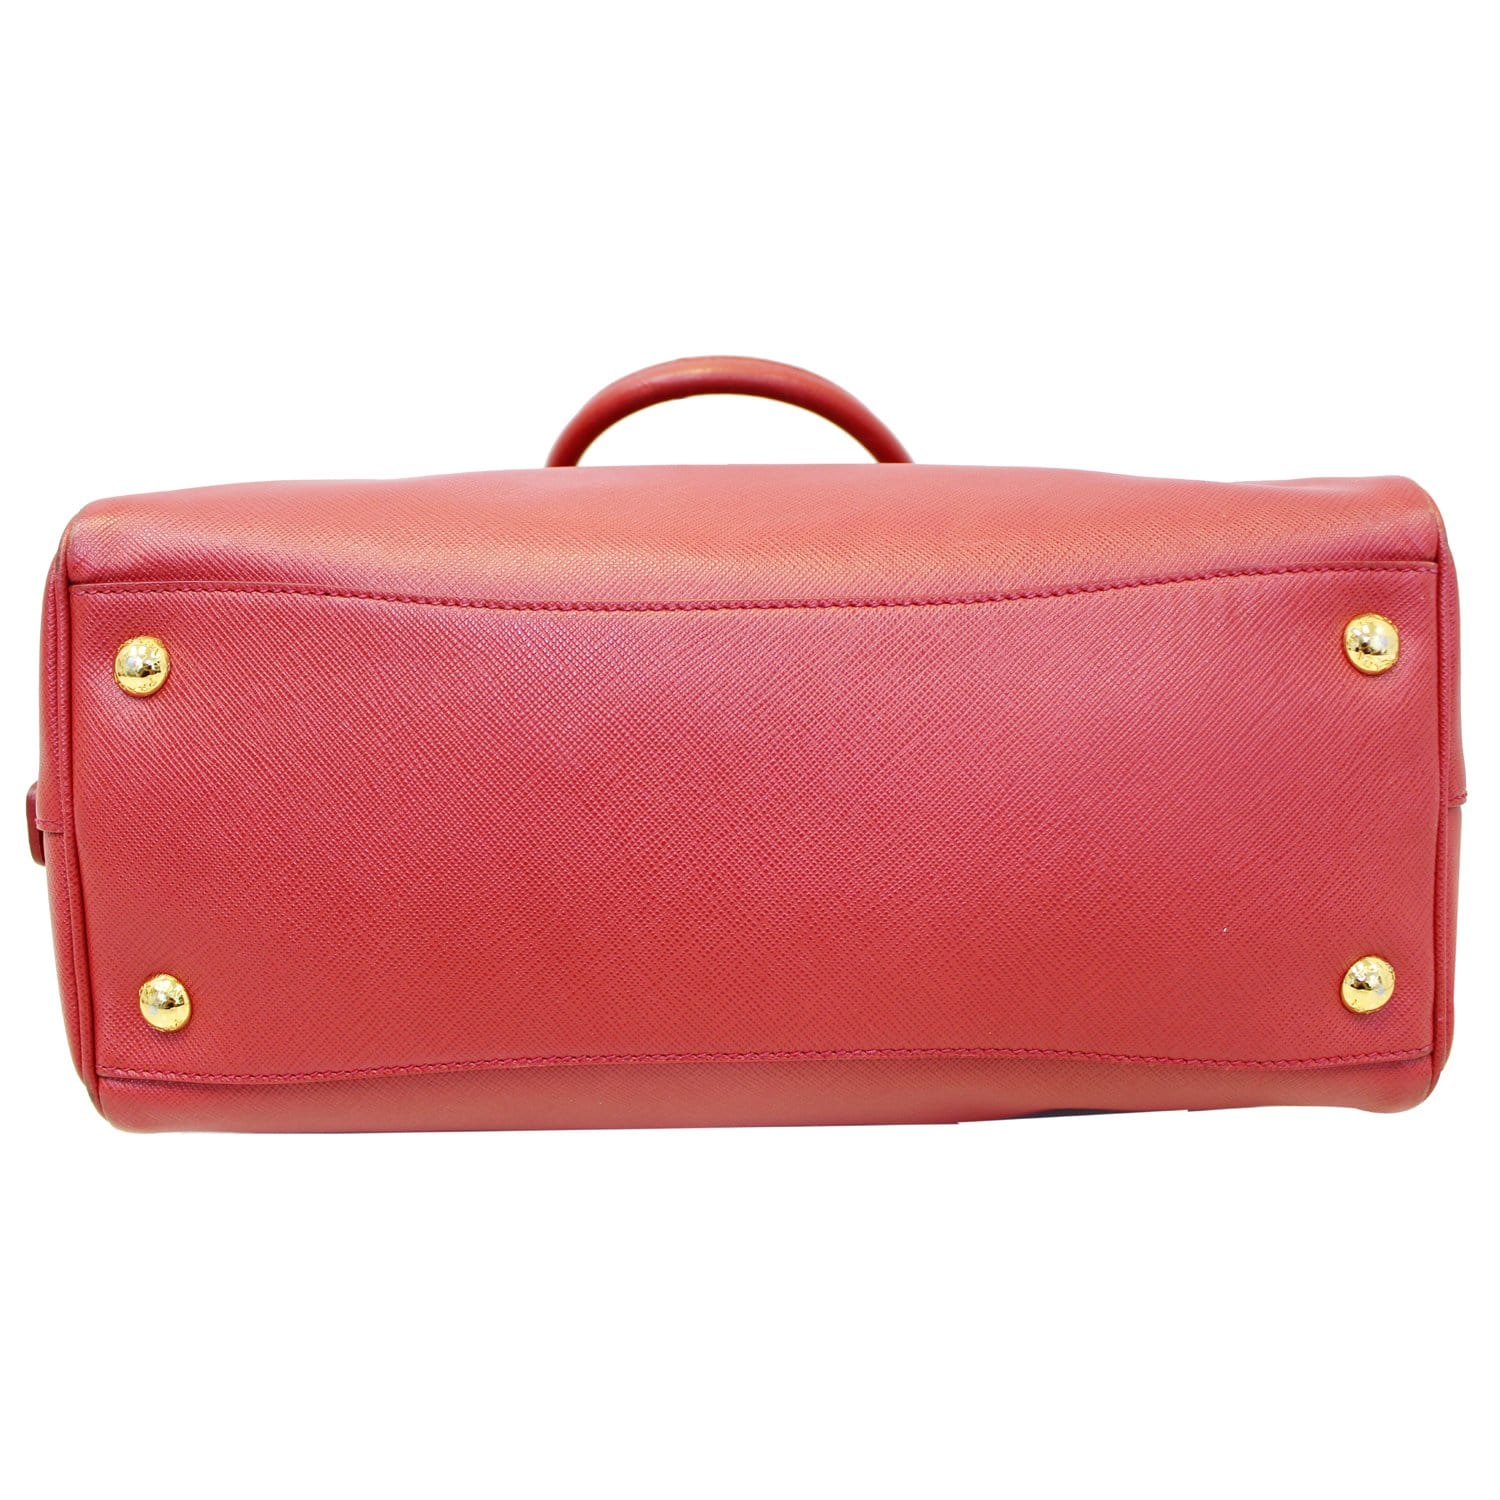 Red Prada Saffiano Lux Bauletto Handbag – Designer Revival